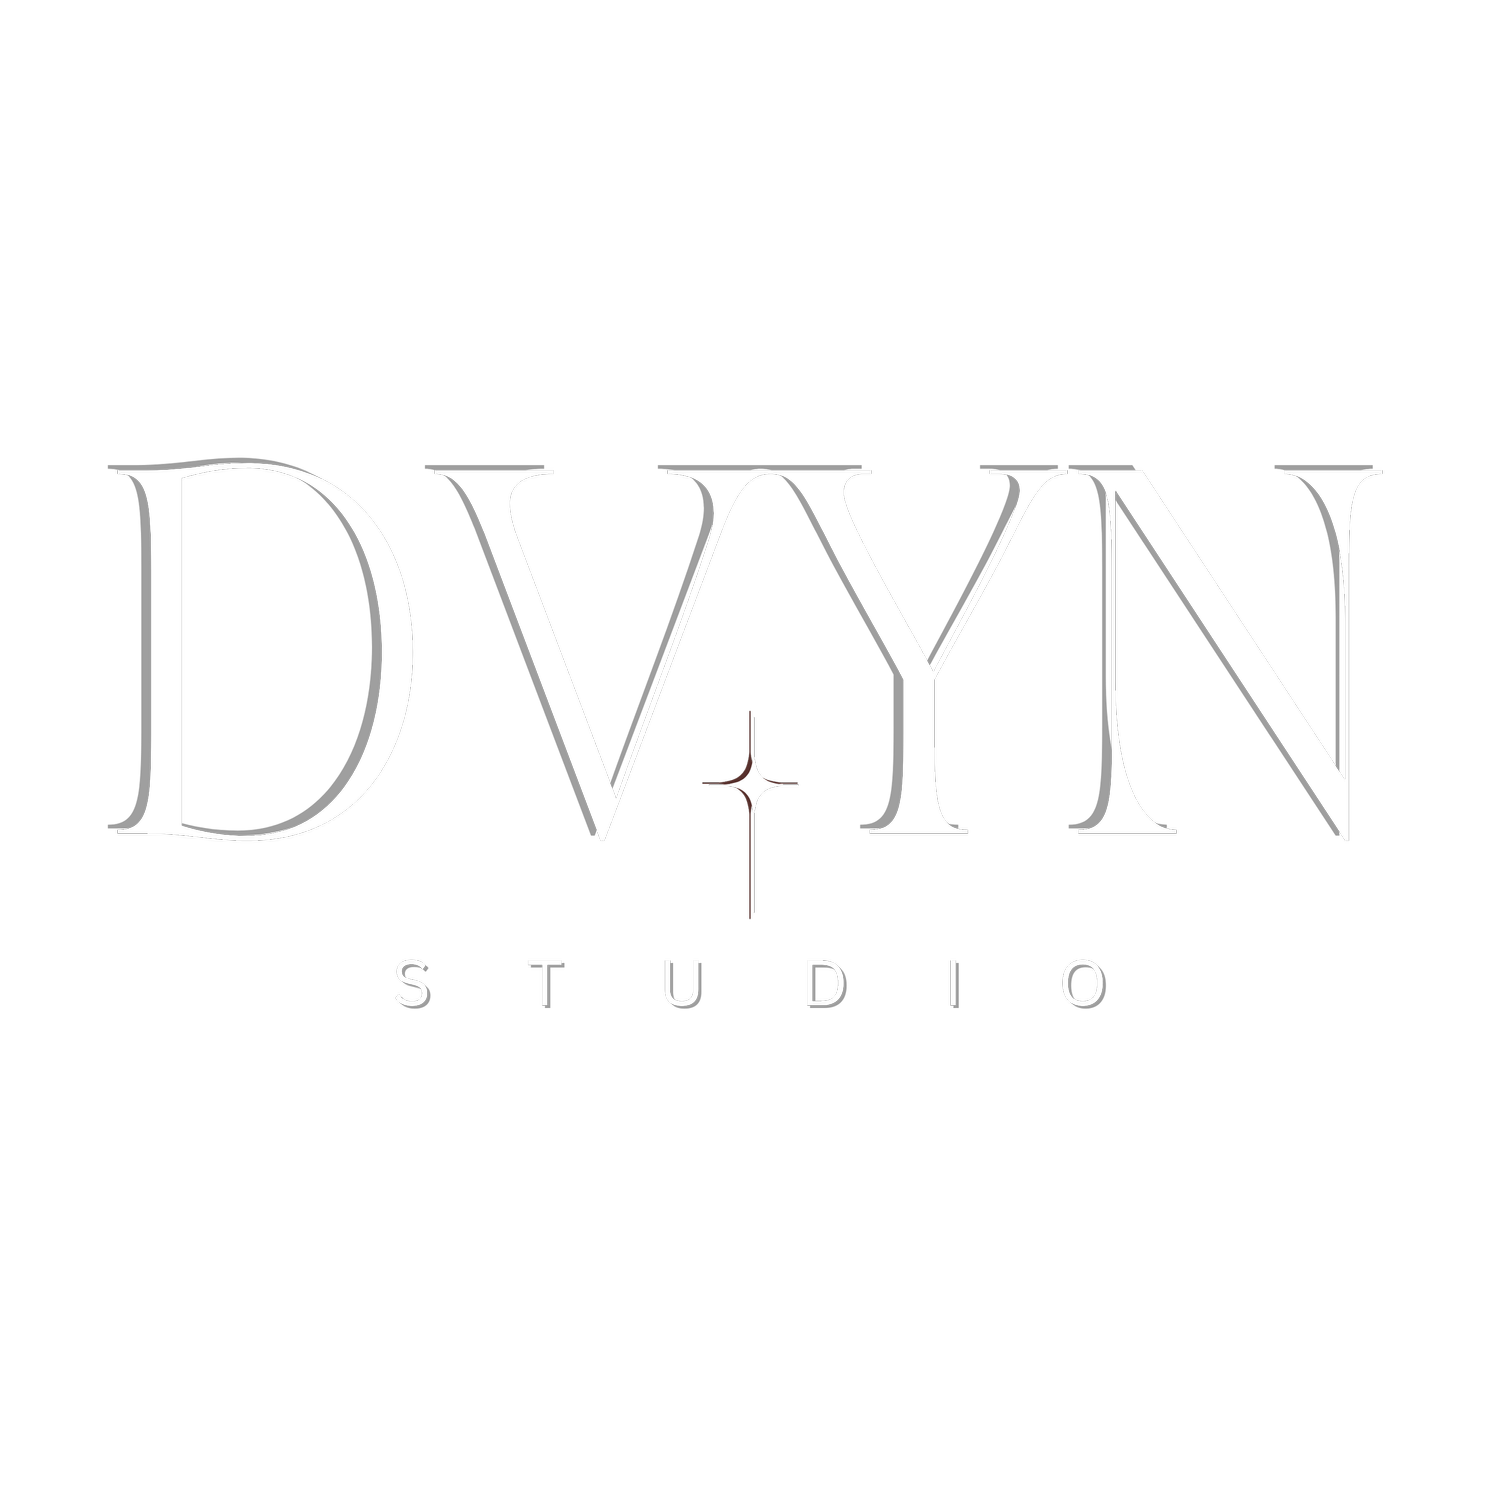 DVYN Studio